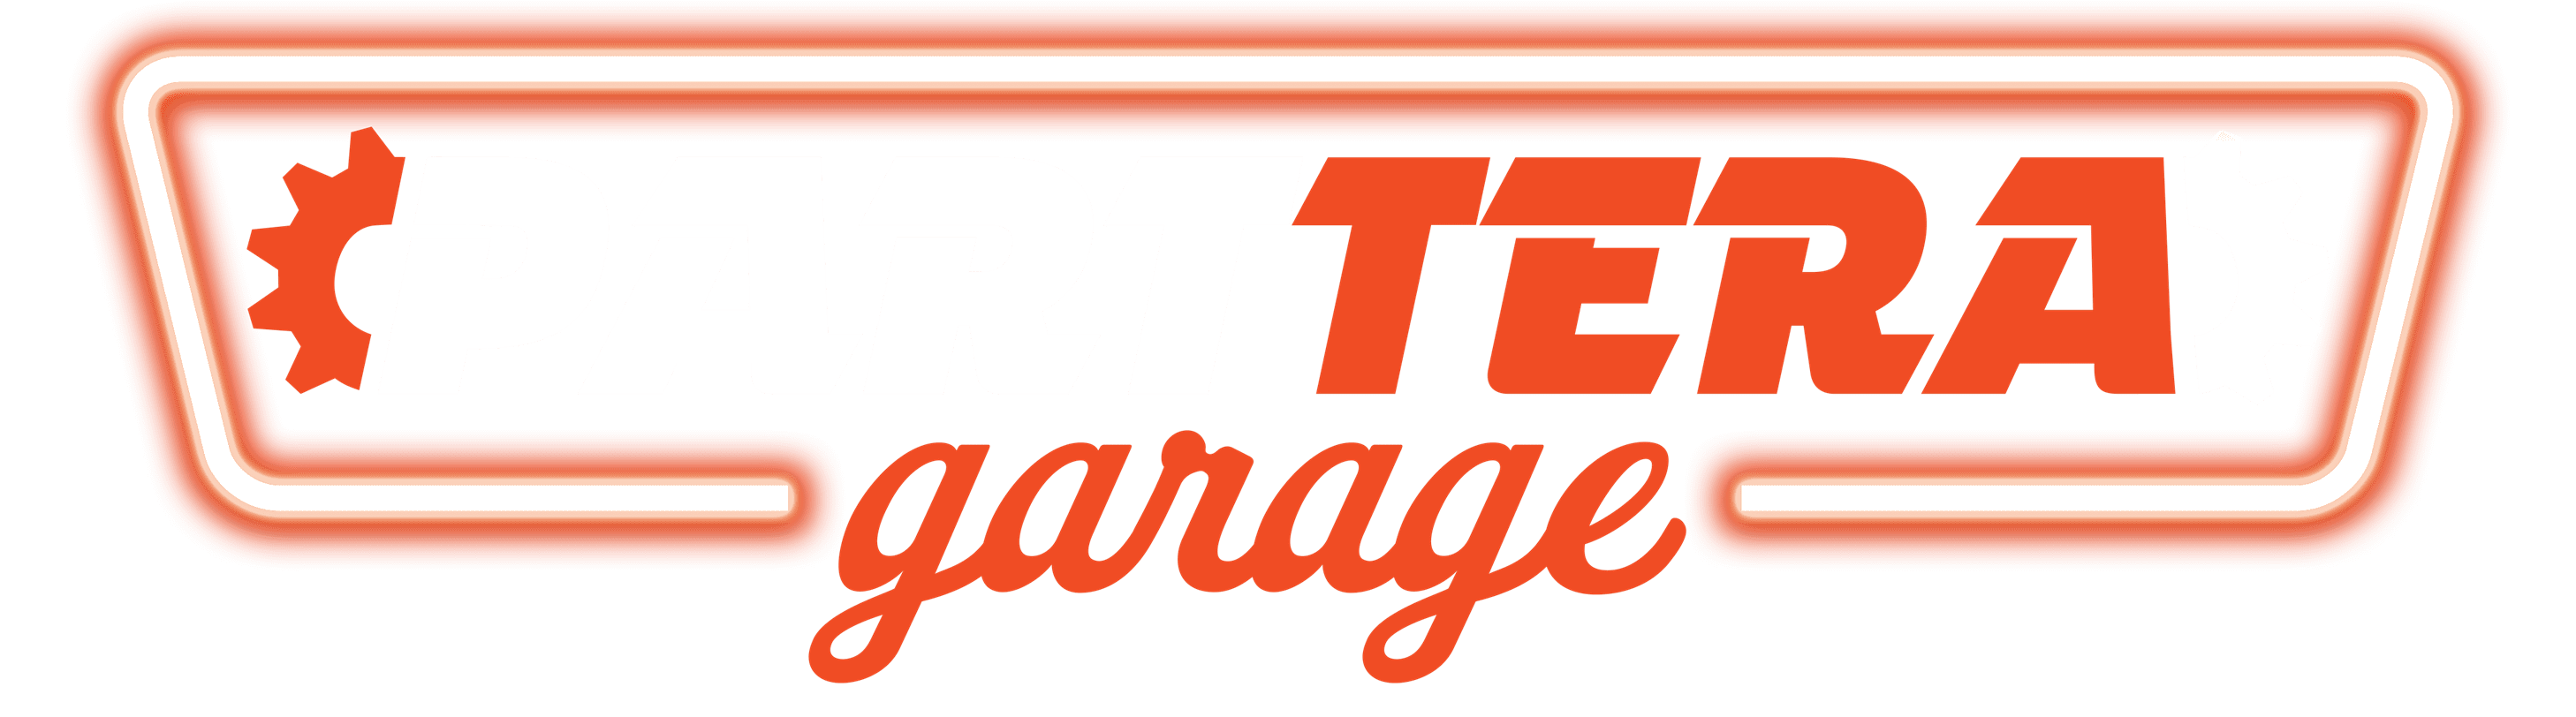 parttera-garage-logo